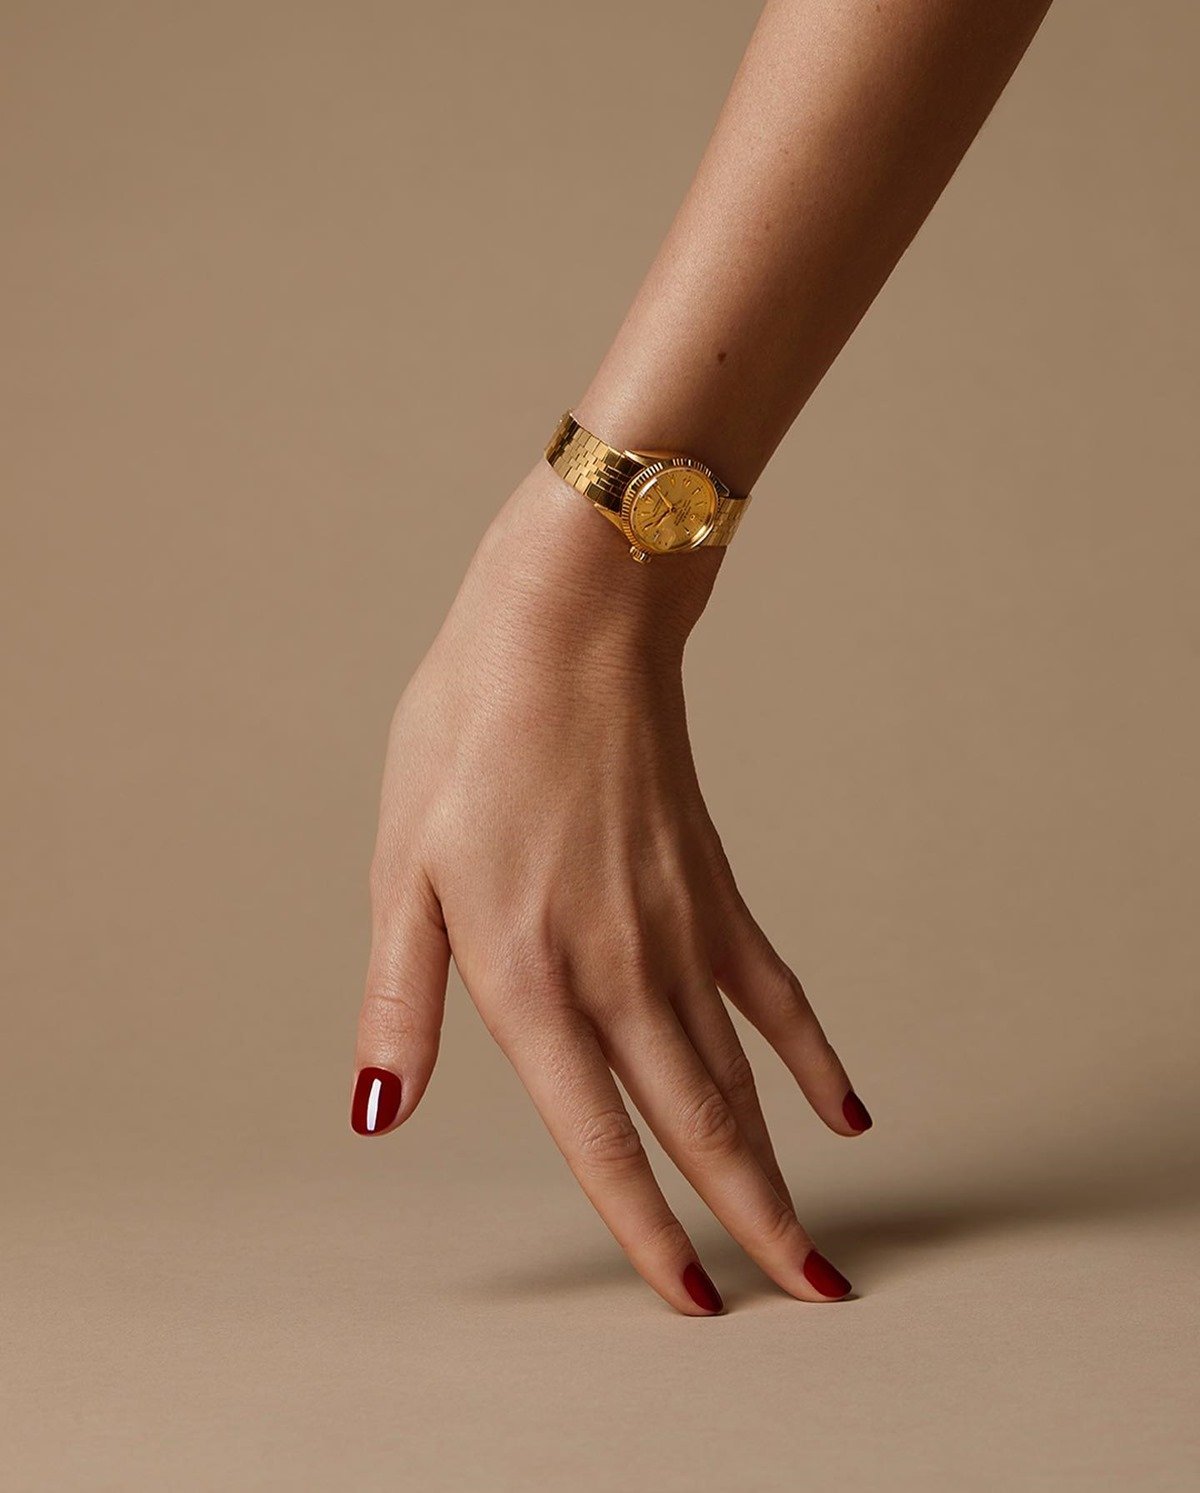 Mão de uma mulher branca e jovem, com unhas curtas e vermelhas, posa para foto usando um relógio da marca Rolex. A pela é dourada e bem delicada. - Metrópoles